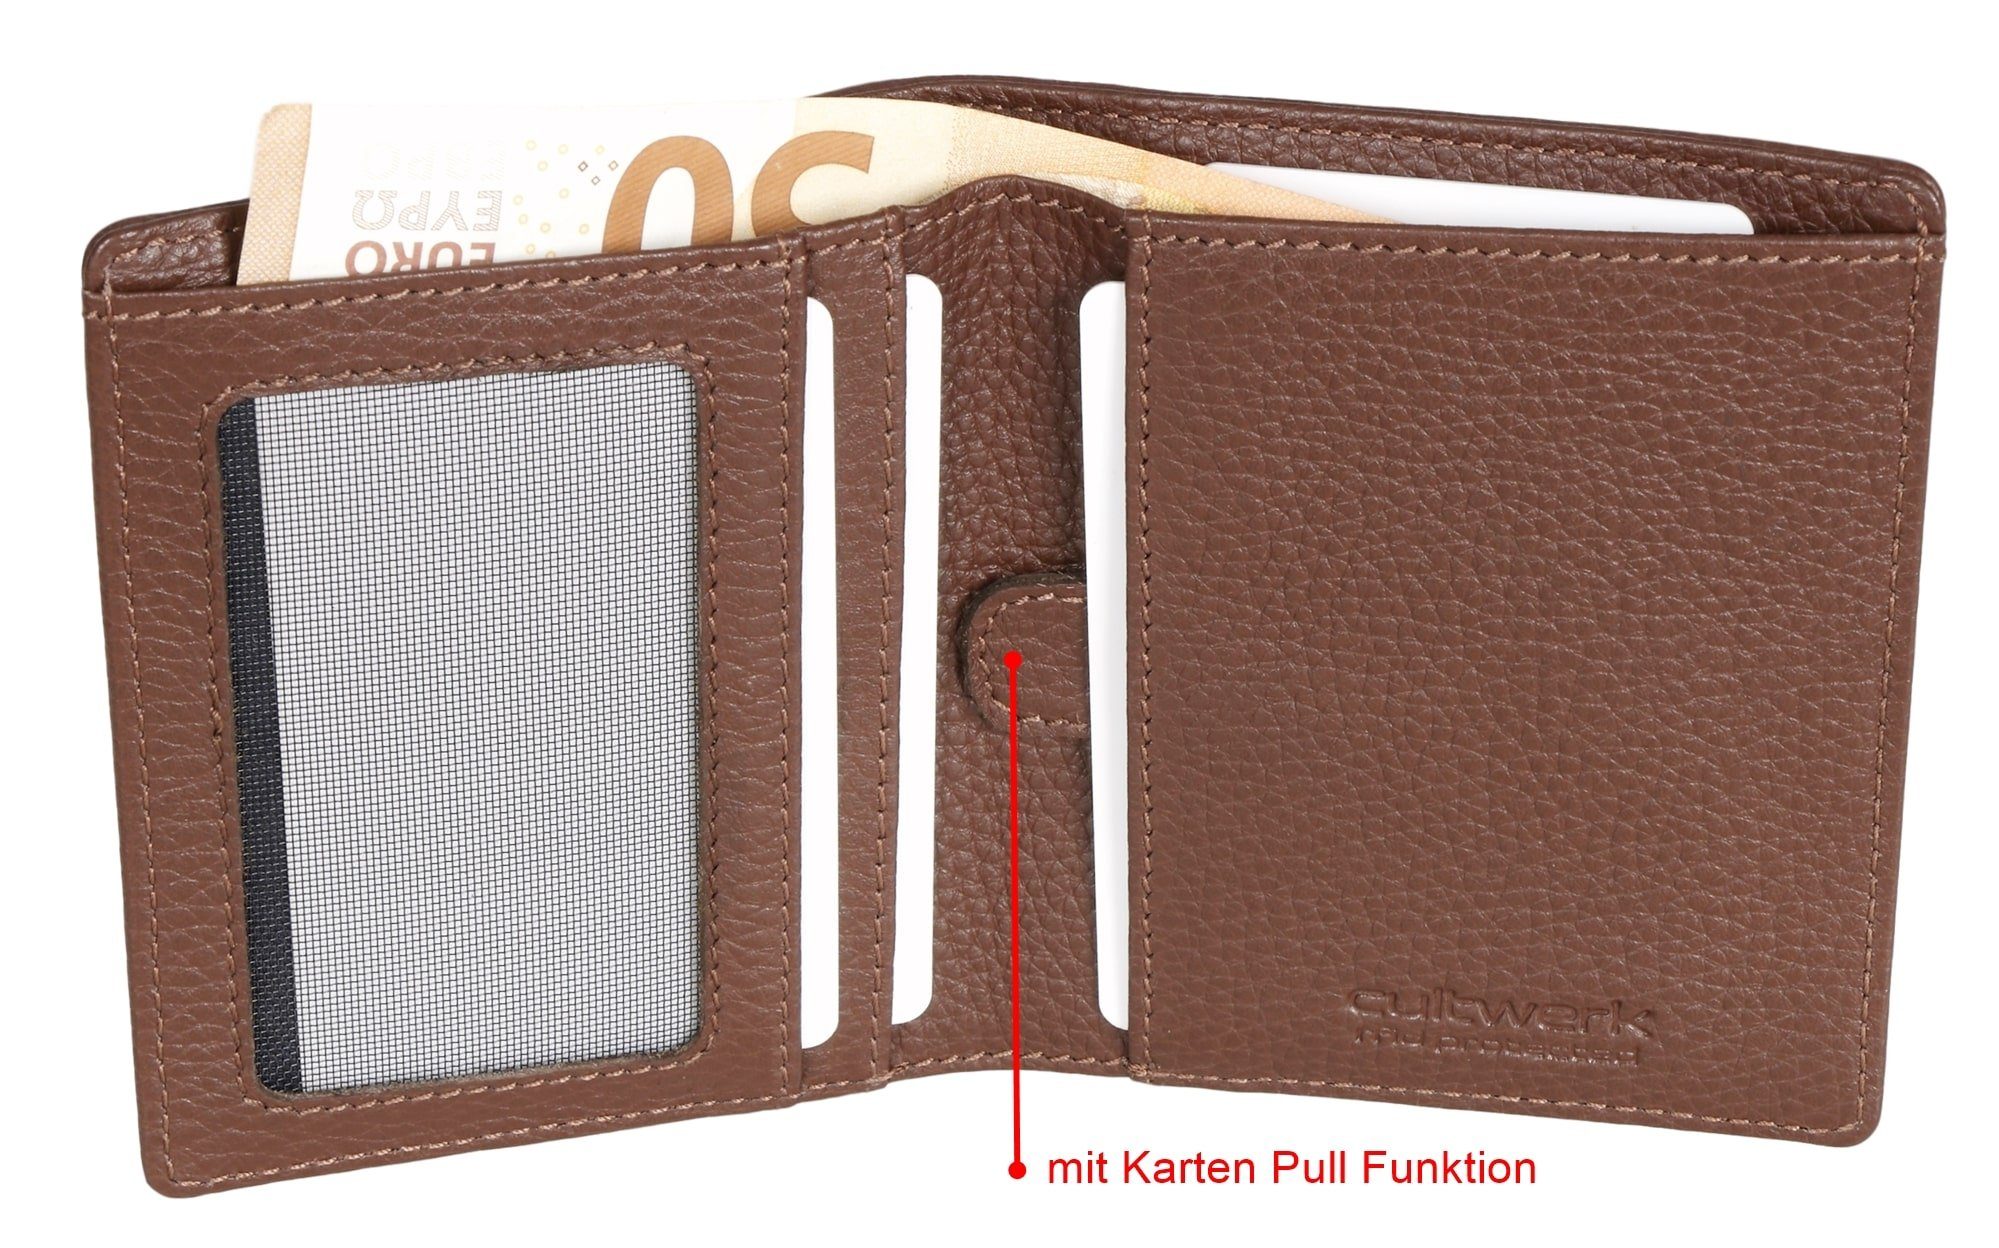 Bear mit IV Geldbörse Farbe Echtleder RFID-Schutz Herren für Kartenfächern, Braun 5 Modell Cultwerk Braun-Espresso Pull mit Card Funktion aus Brown und